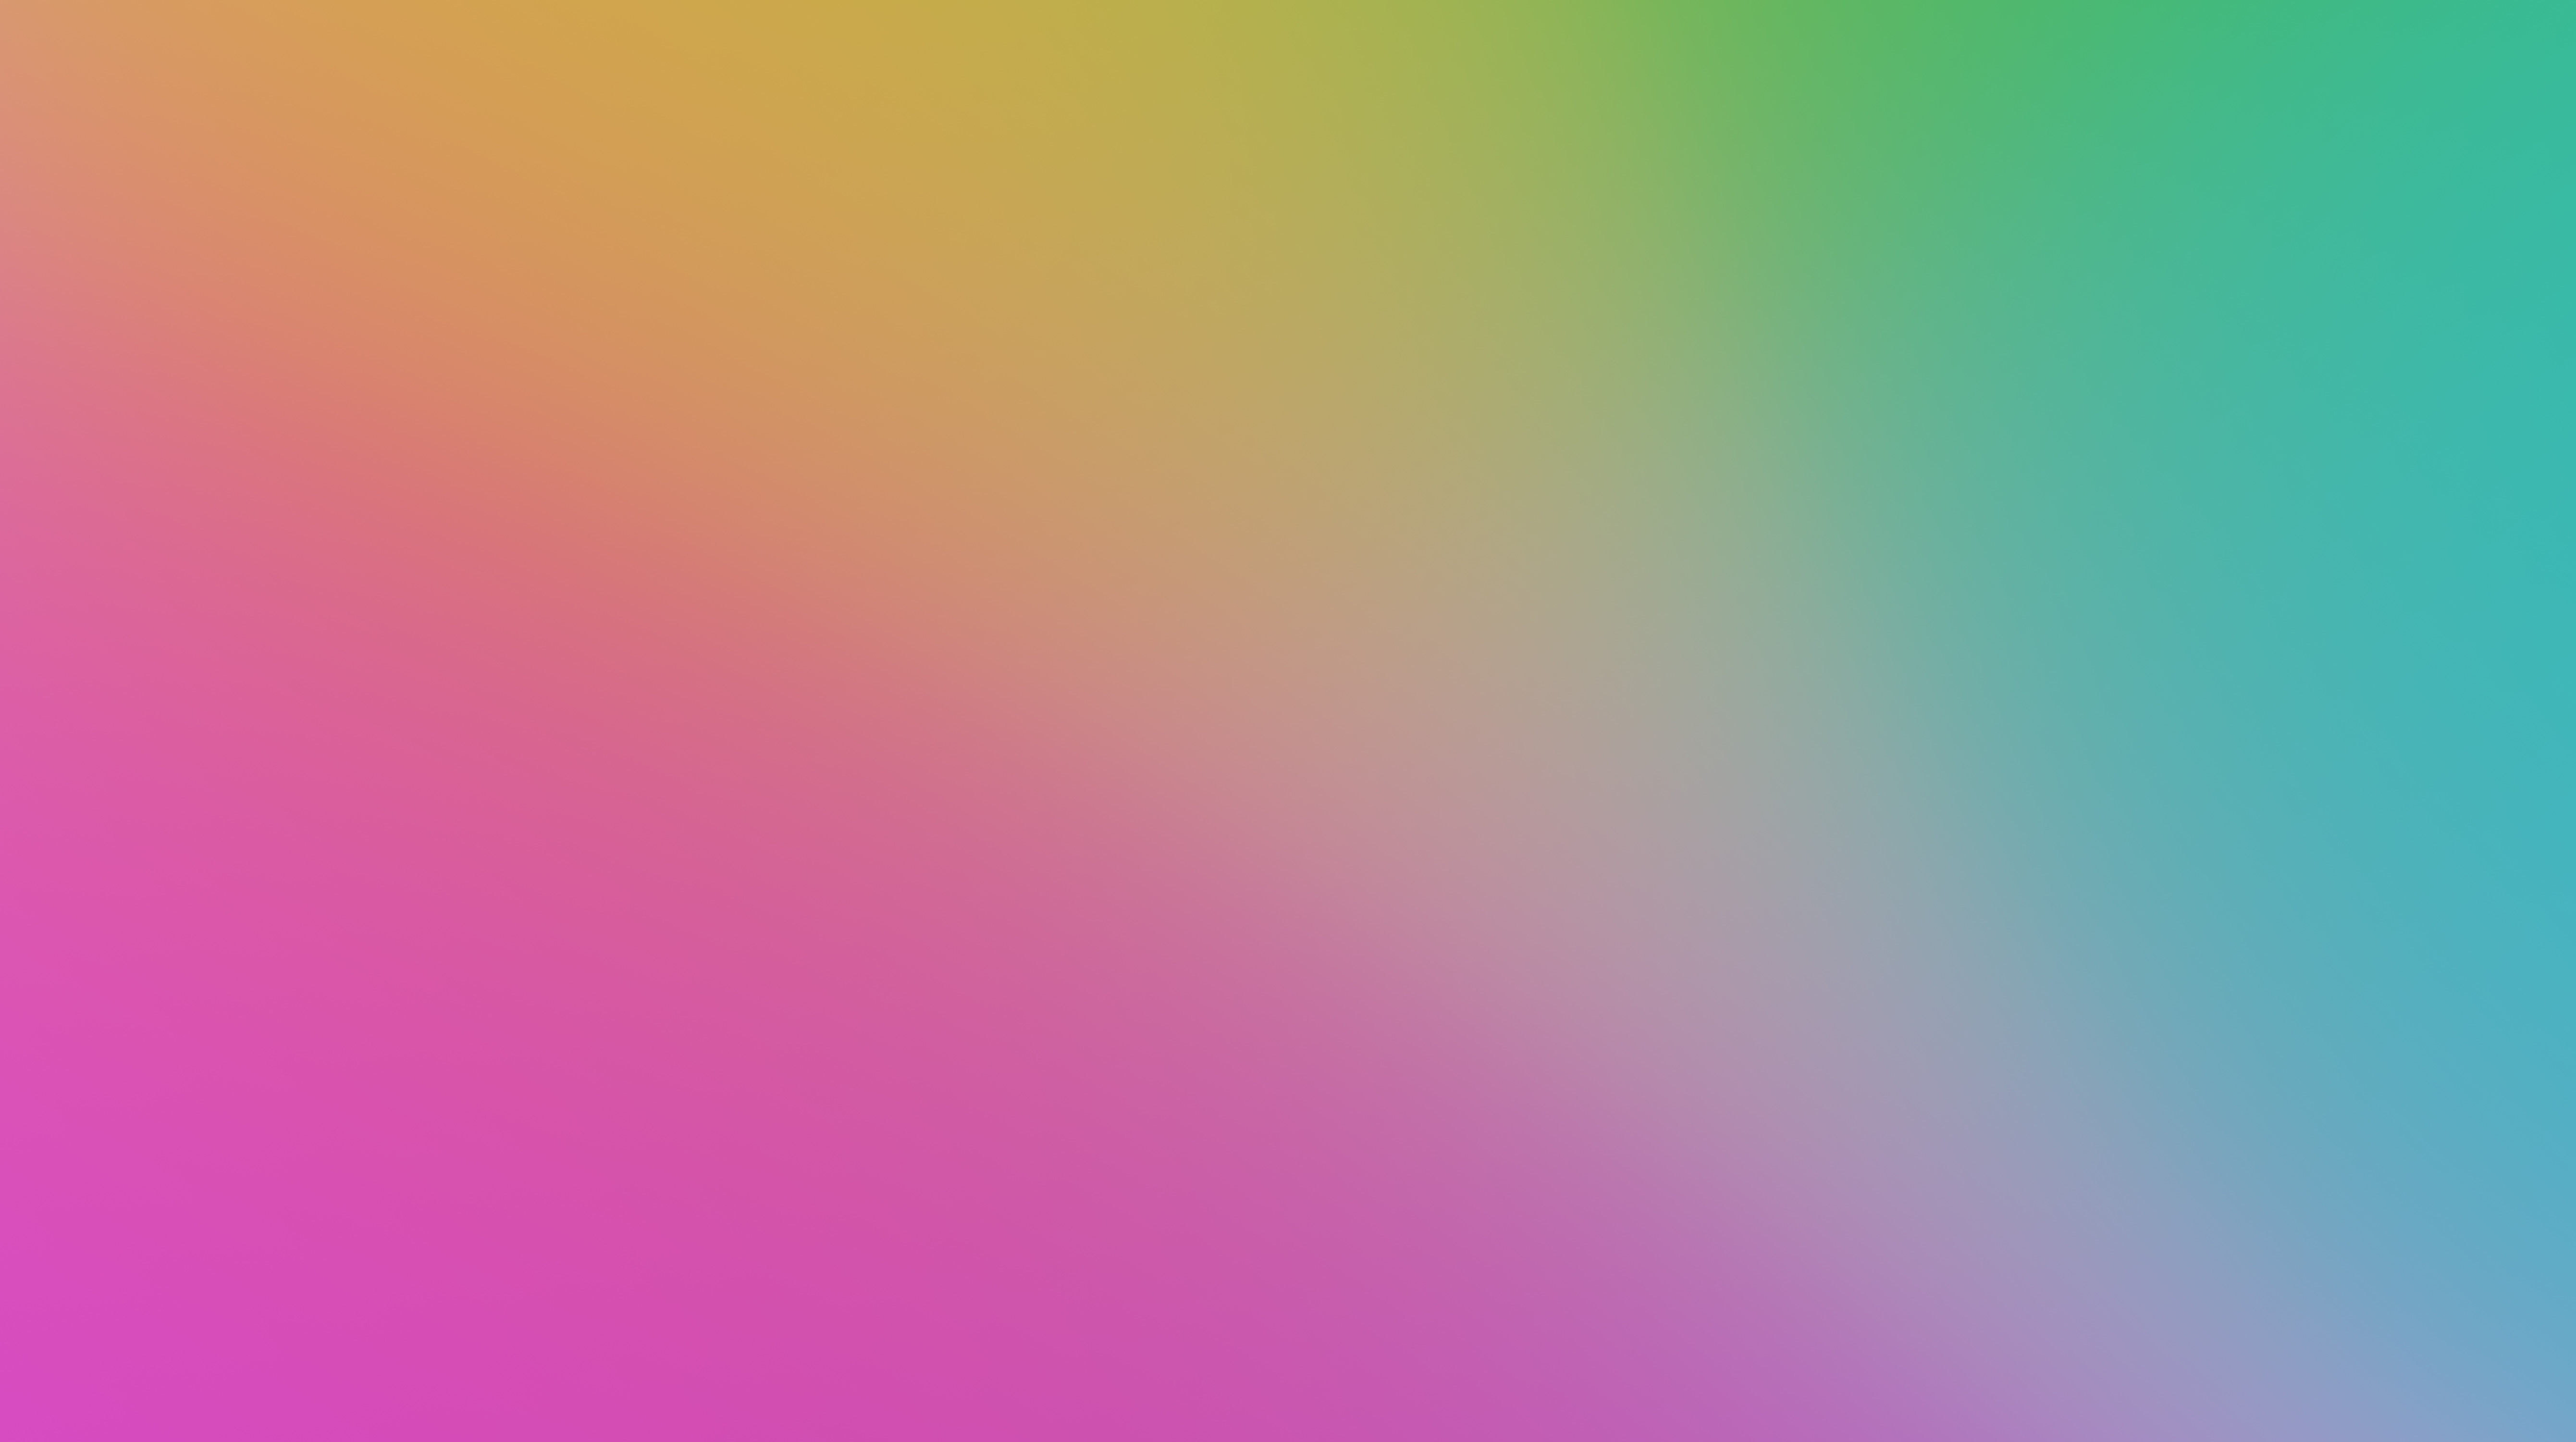 Blur Vibrant Gradient Background Wallpaper, HD Minimalist 4K Wallpapers